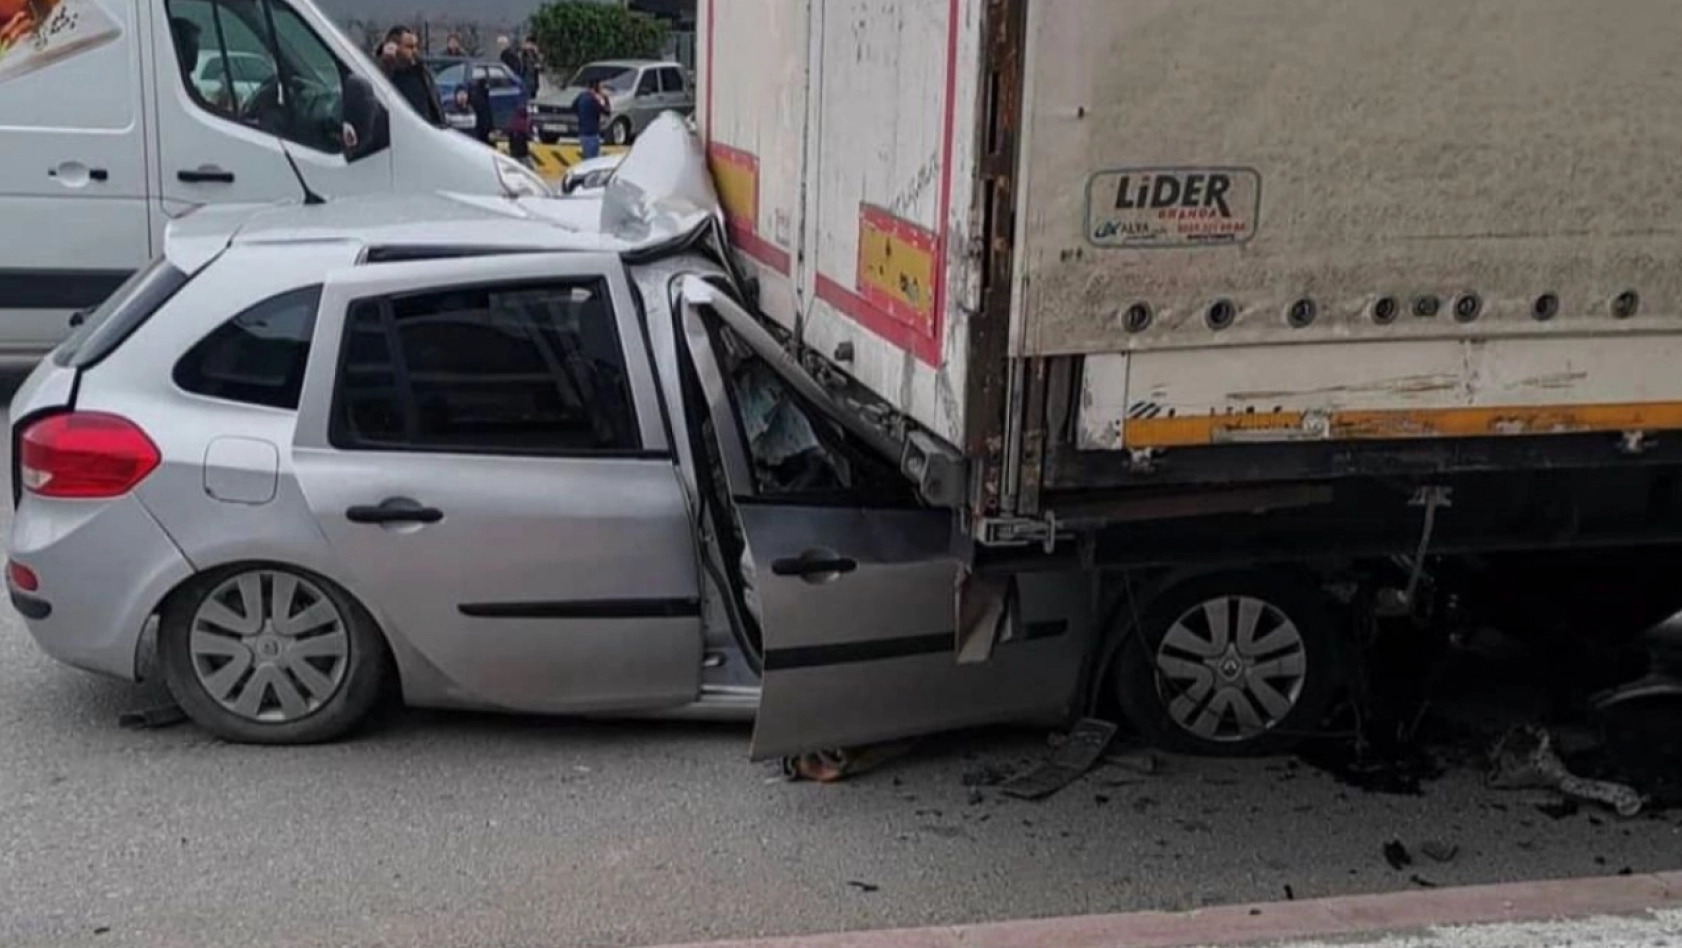 Son Dakika: Konya Meram'da Trafik Kazası - 1 Ölü 2 Yaralı